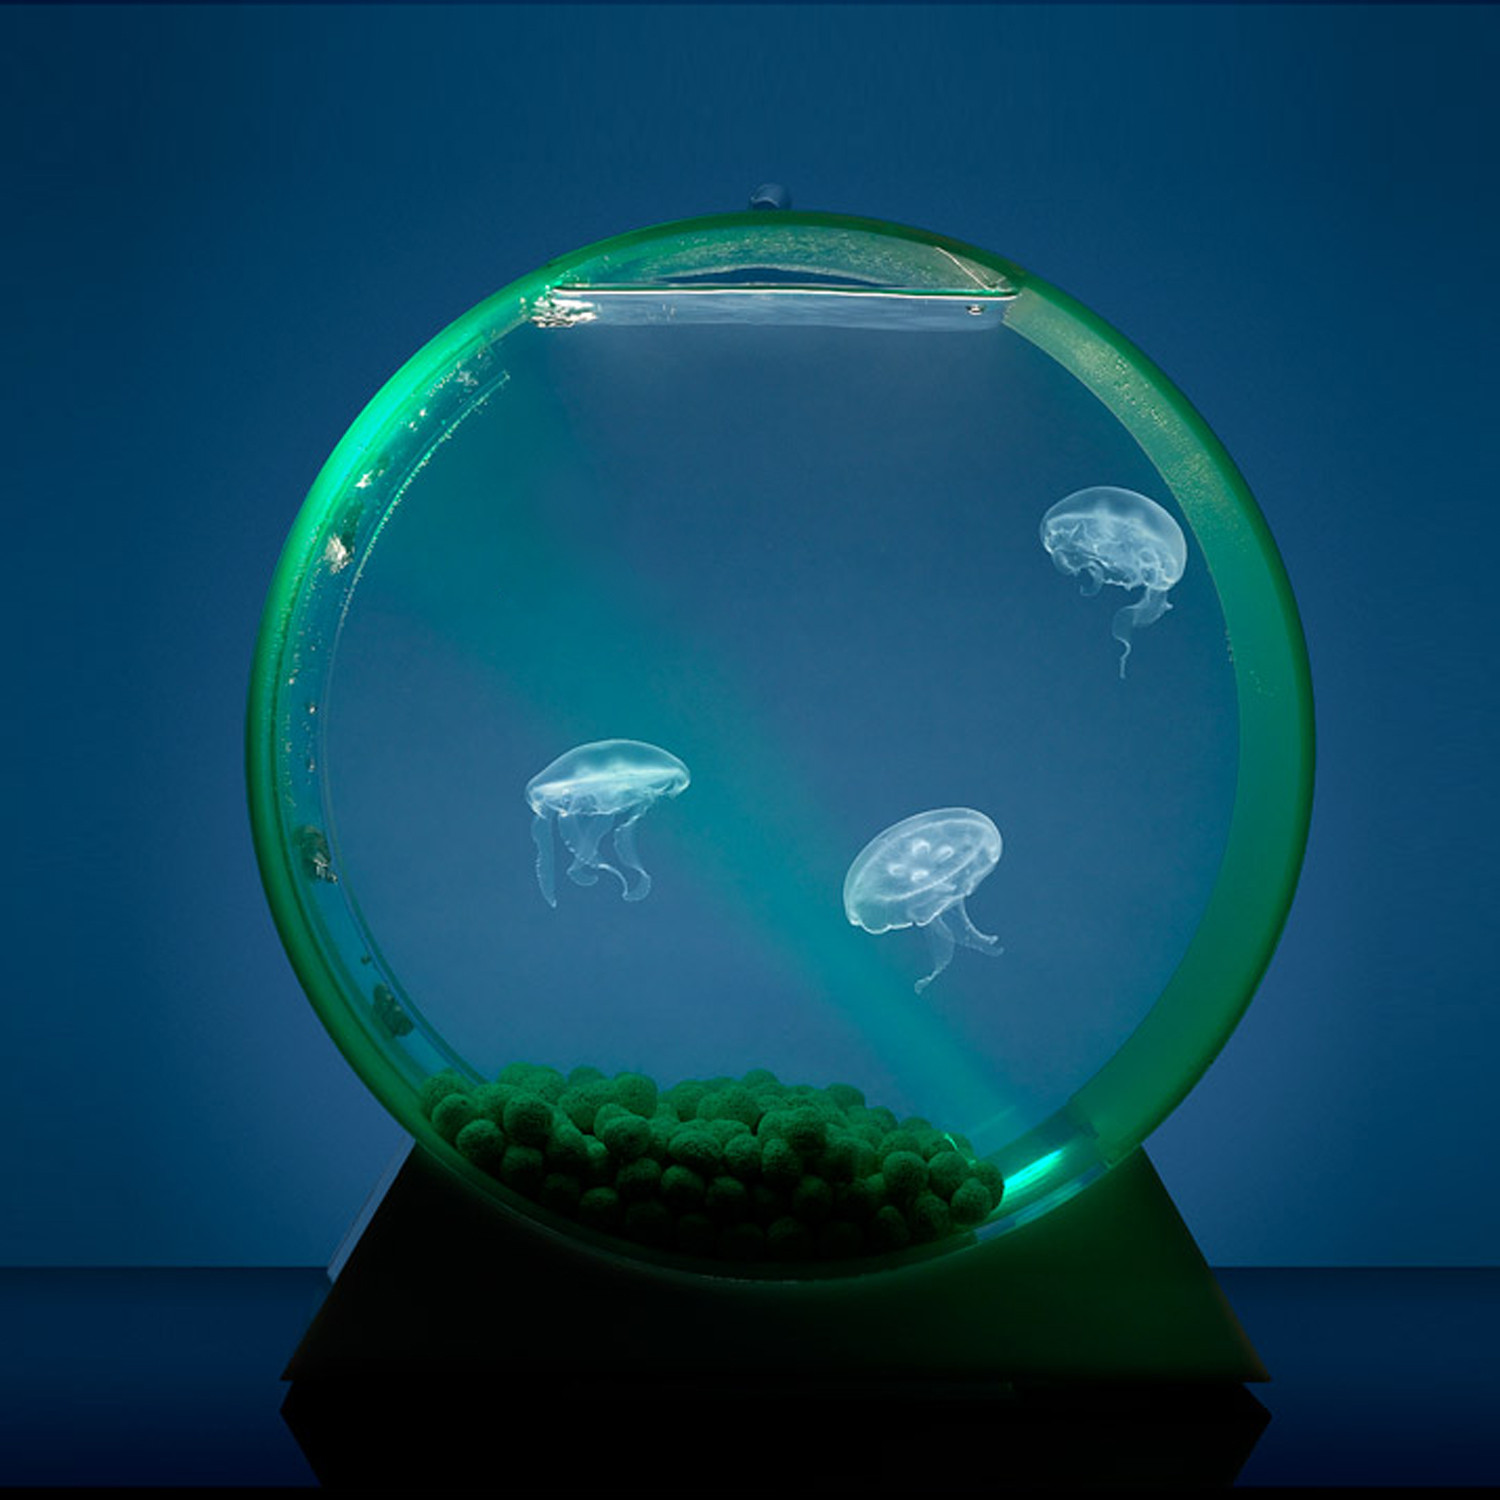 Аквариум наблюдать. Аквариум led desktop Jellyfish Tank. Аквариумные медузы. Аквариум с медузами Orbit 20. Аквариум с медузами.